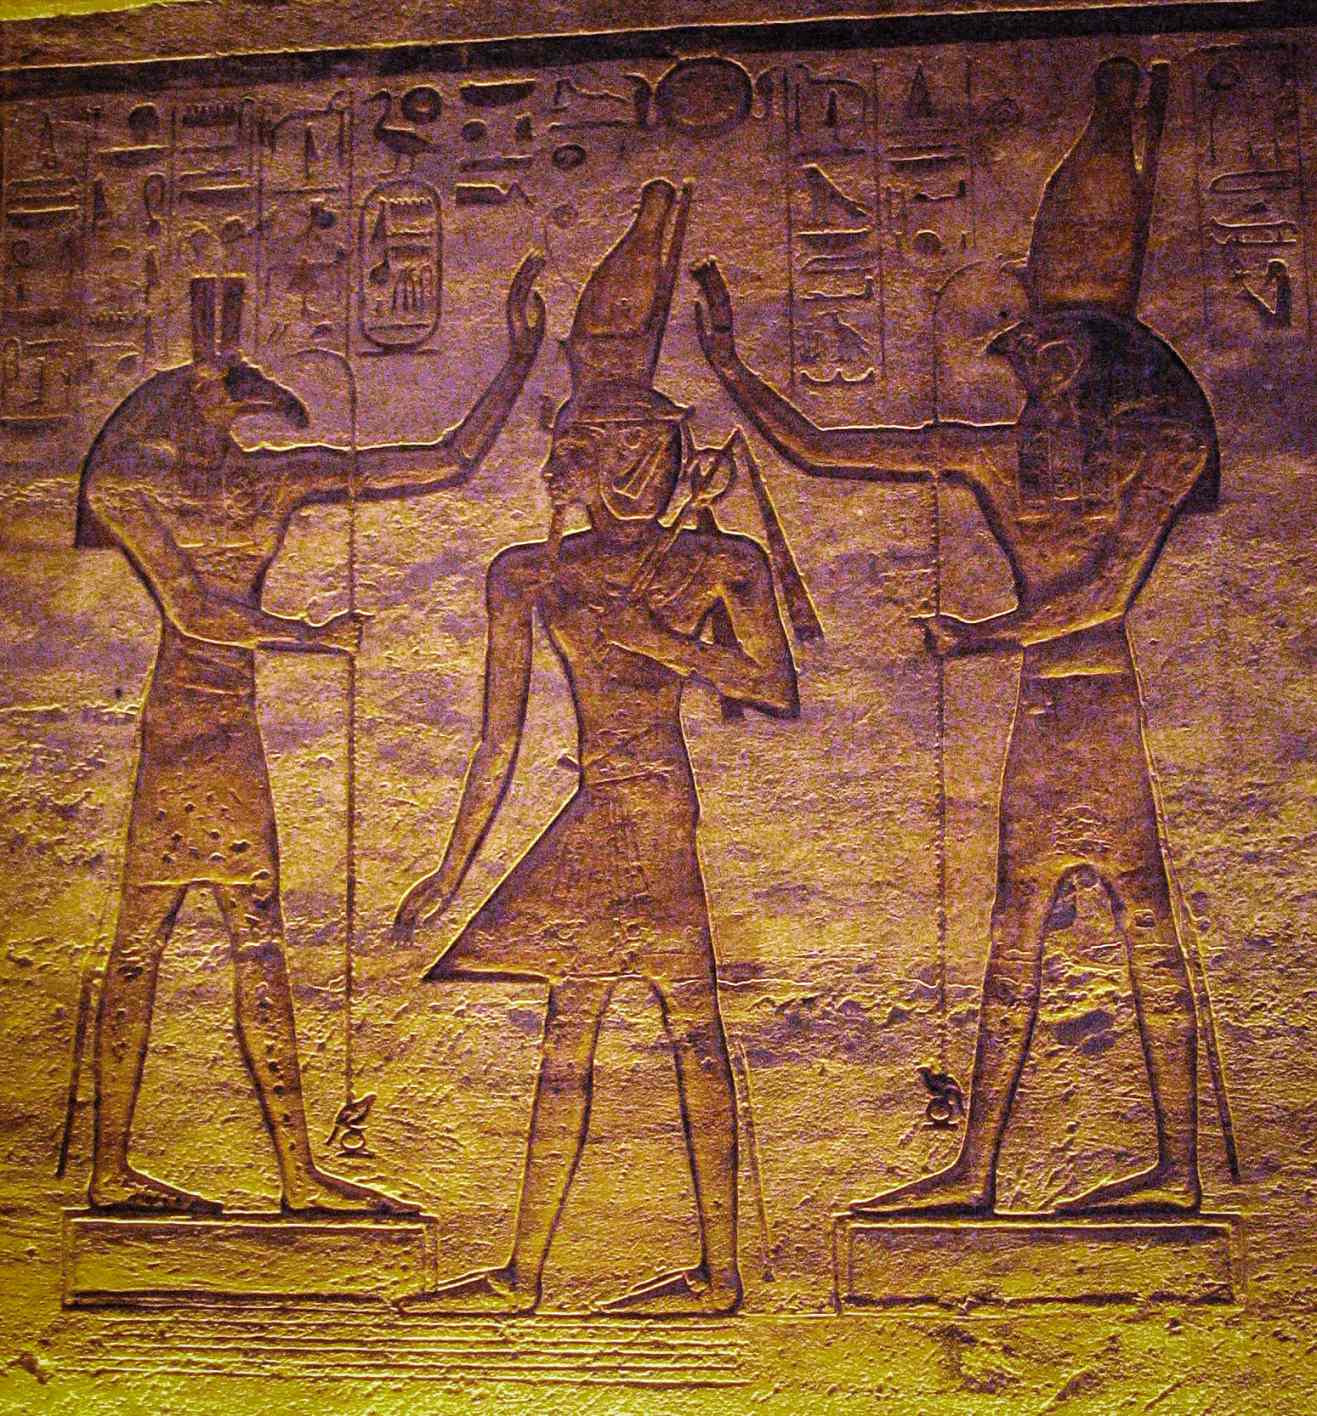 Szett (Seth) és Horus imádják Ramszesz. A jelenlegi tanulmány azt mutatja, hogy a holdat Seth, az Algol változócsillagot pedig Horus képviselhette a kairói naptárban.